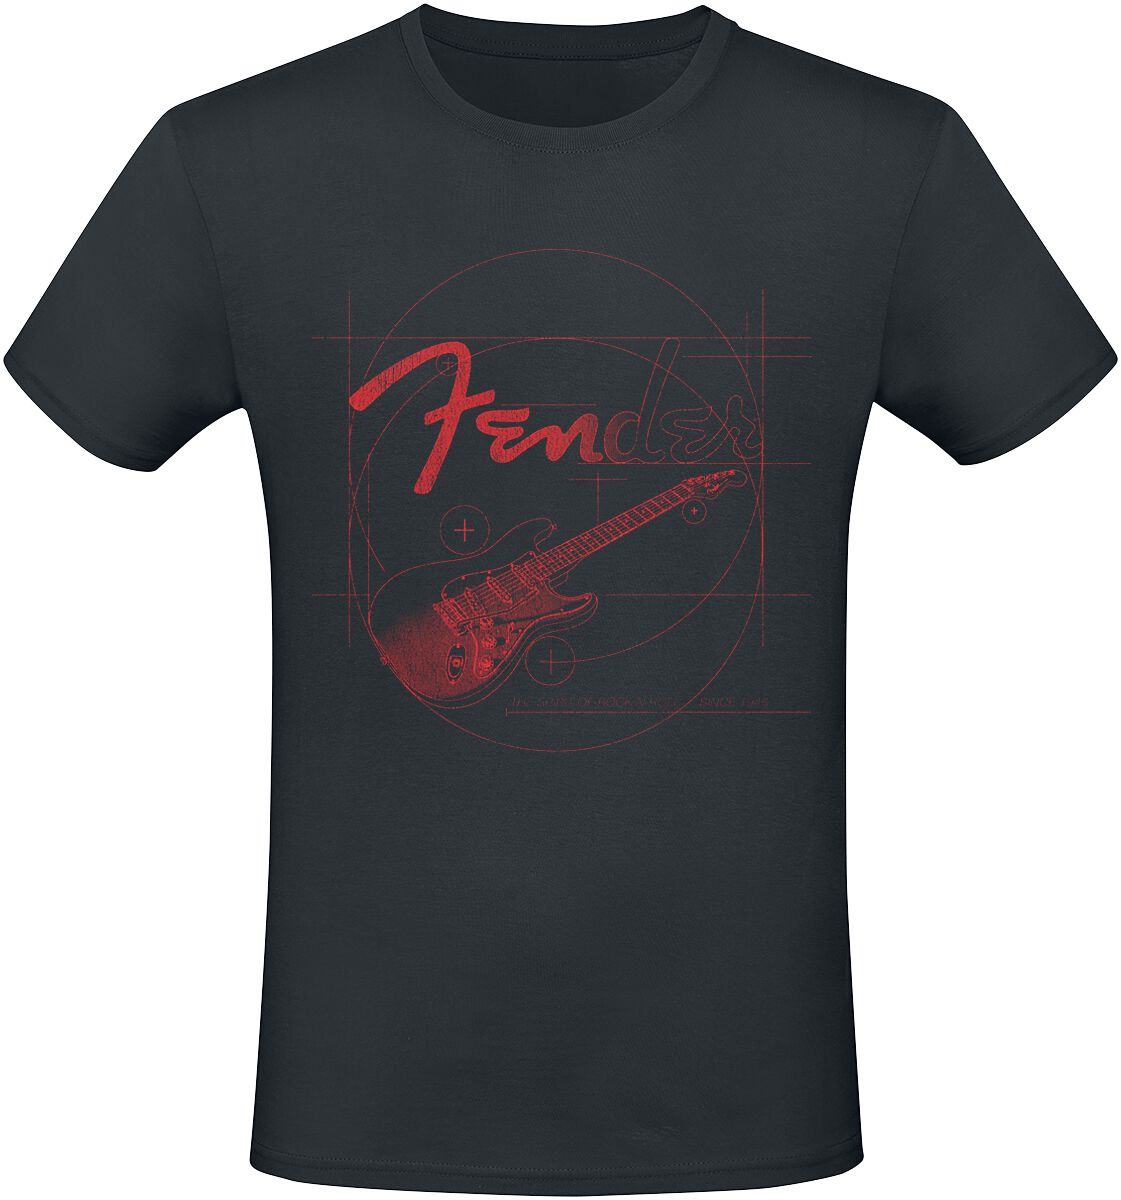 Fender T-Shirt - Red Guitar - XL bis XXL - für Männer - Größe XXL - schwarz  - Lizenziertes Merchandise!